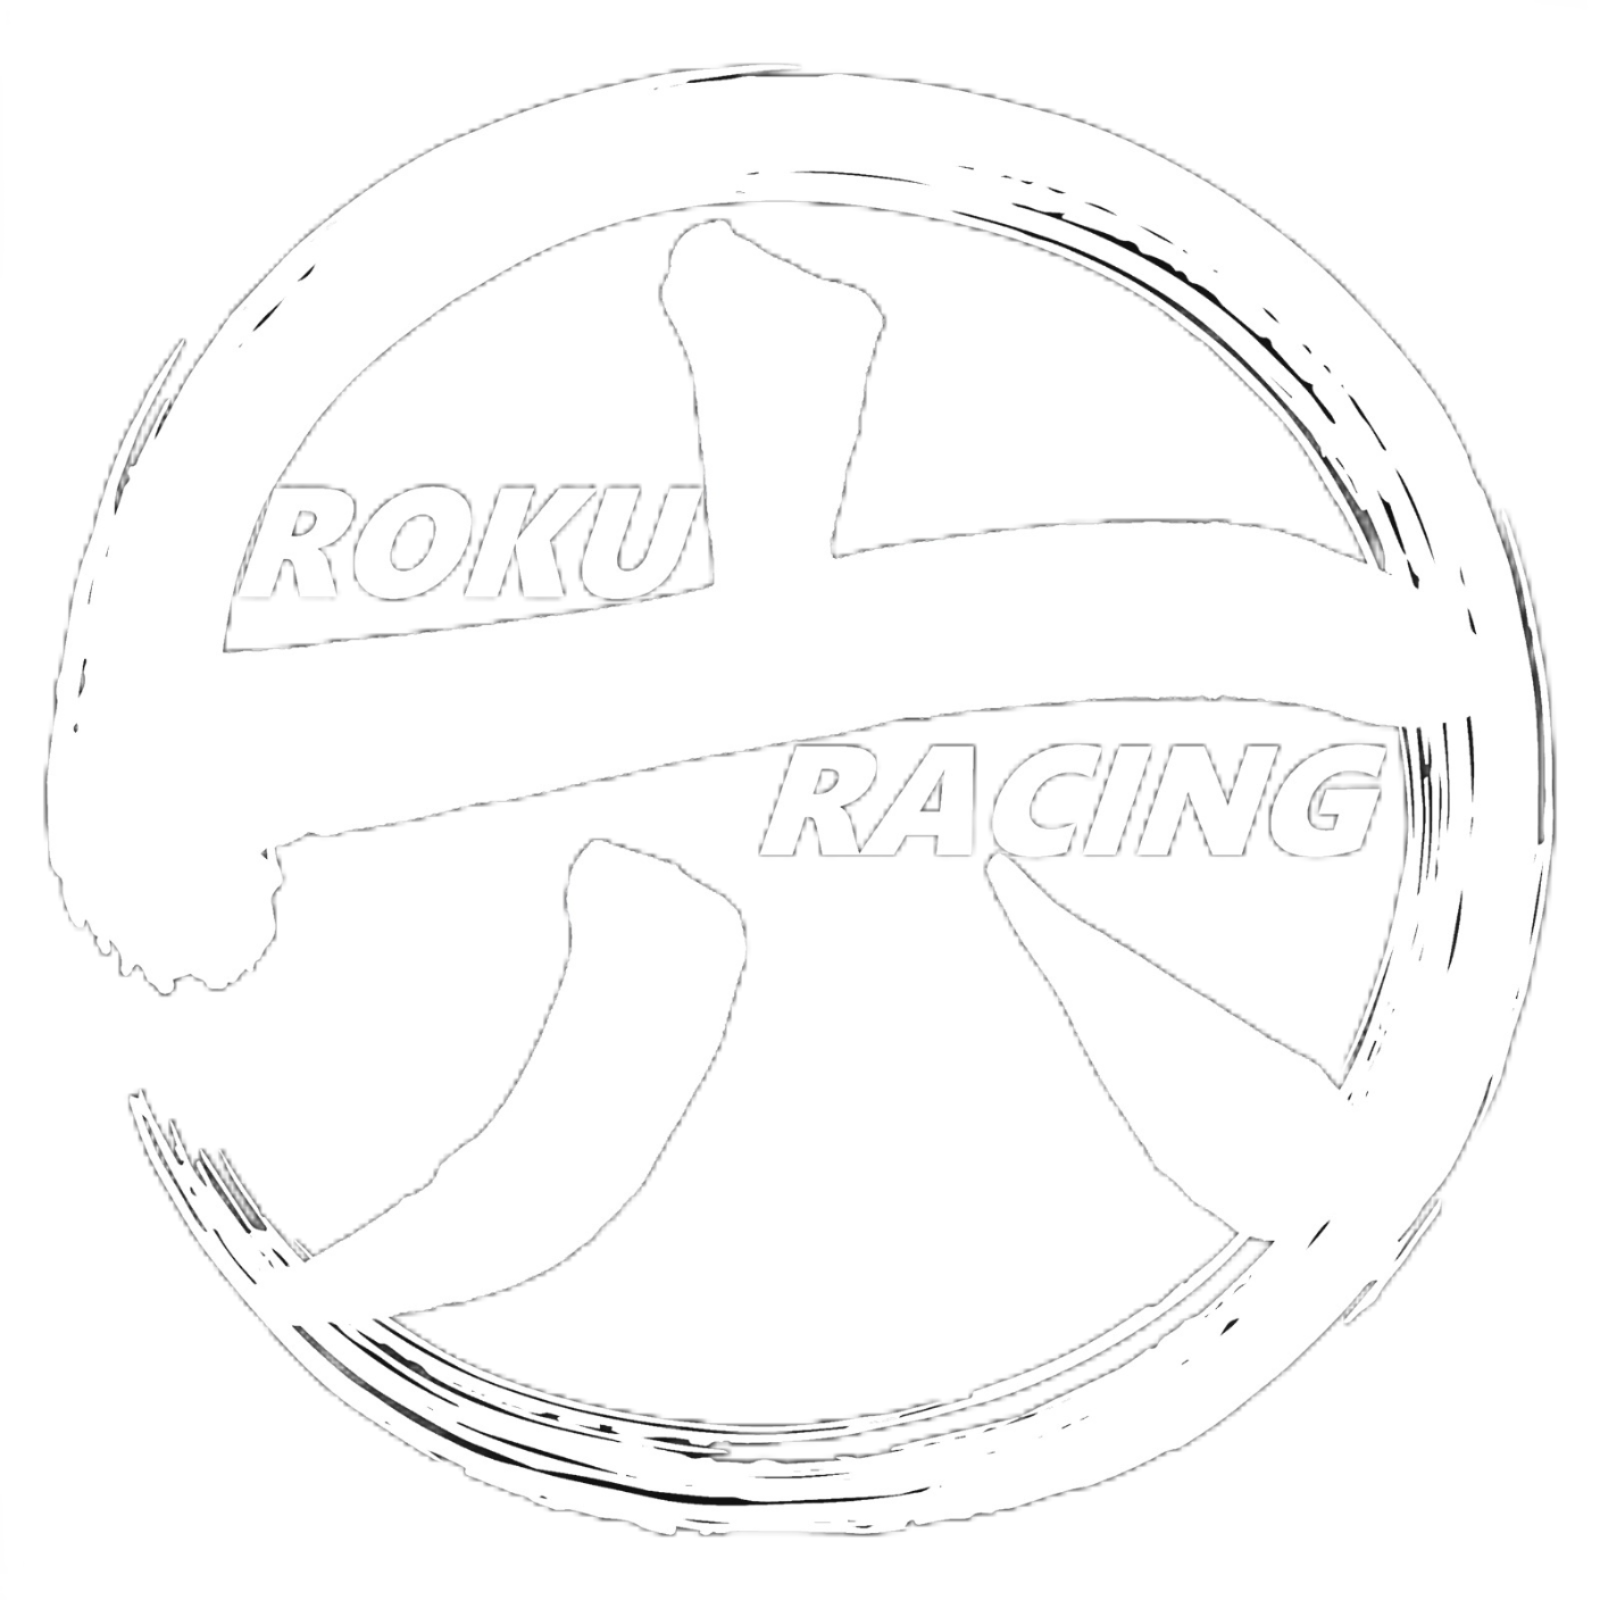 Roku Racing